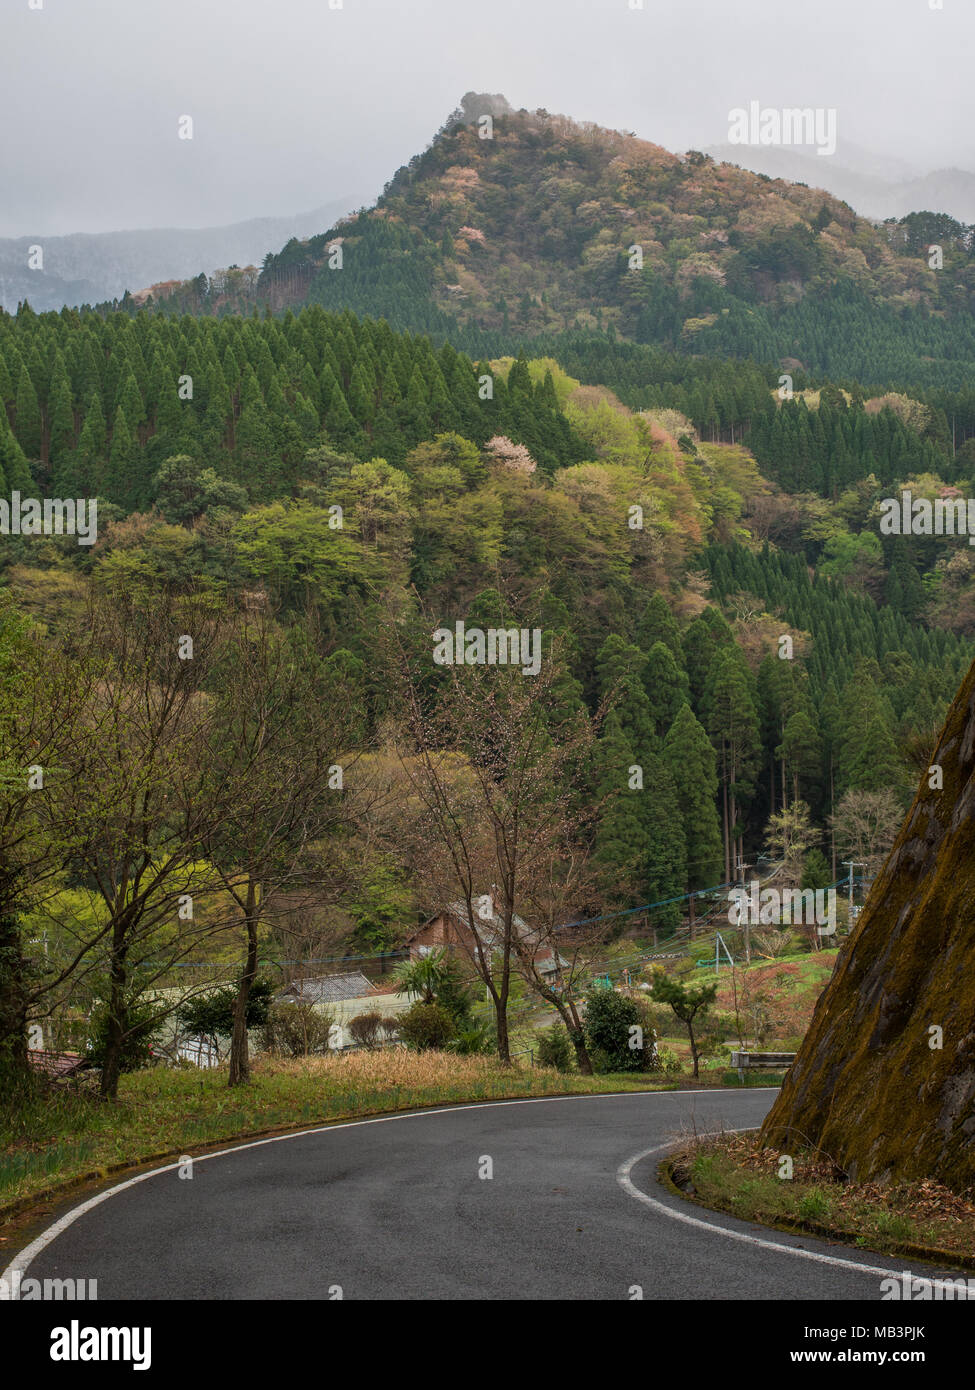 Strada per Kobaru, Oita, Kyushu in Giappone. Paesaggio forestale. Bosco misto. Plantation Cryptomeria japonica e naturale della foresta di latifoglie. Foto Stock